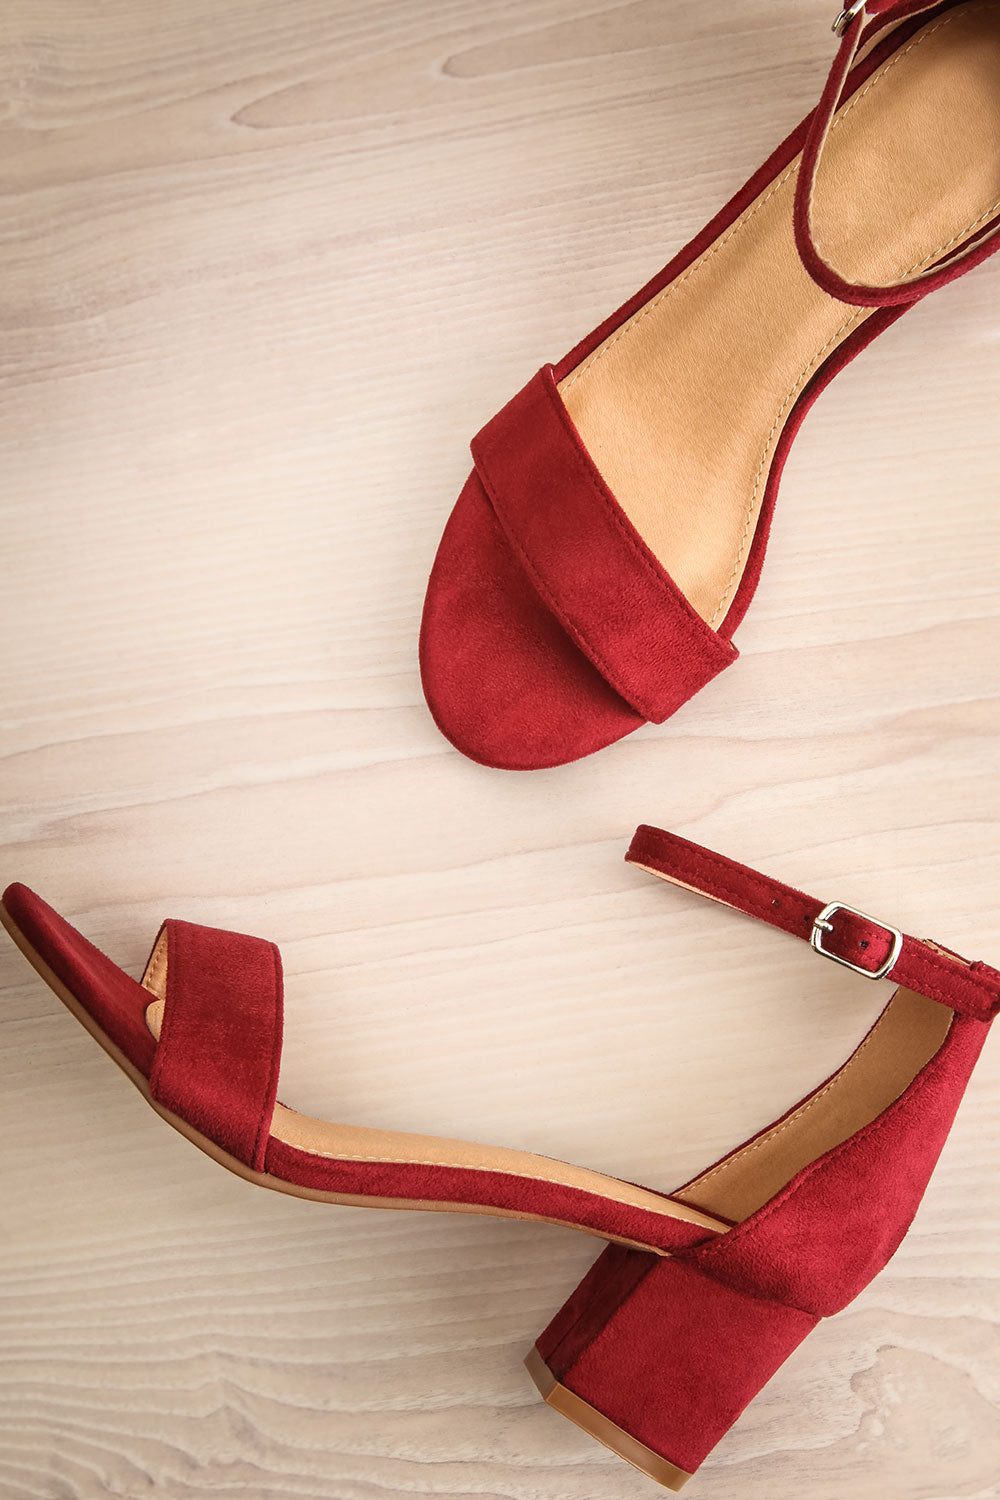 burgundy block heel shoes